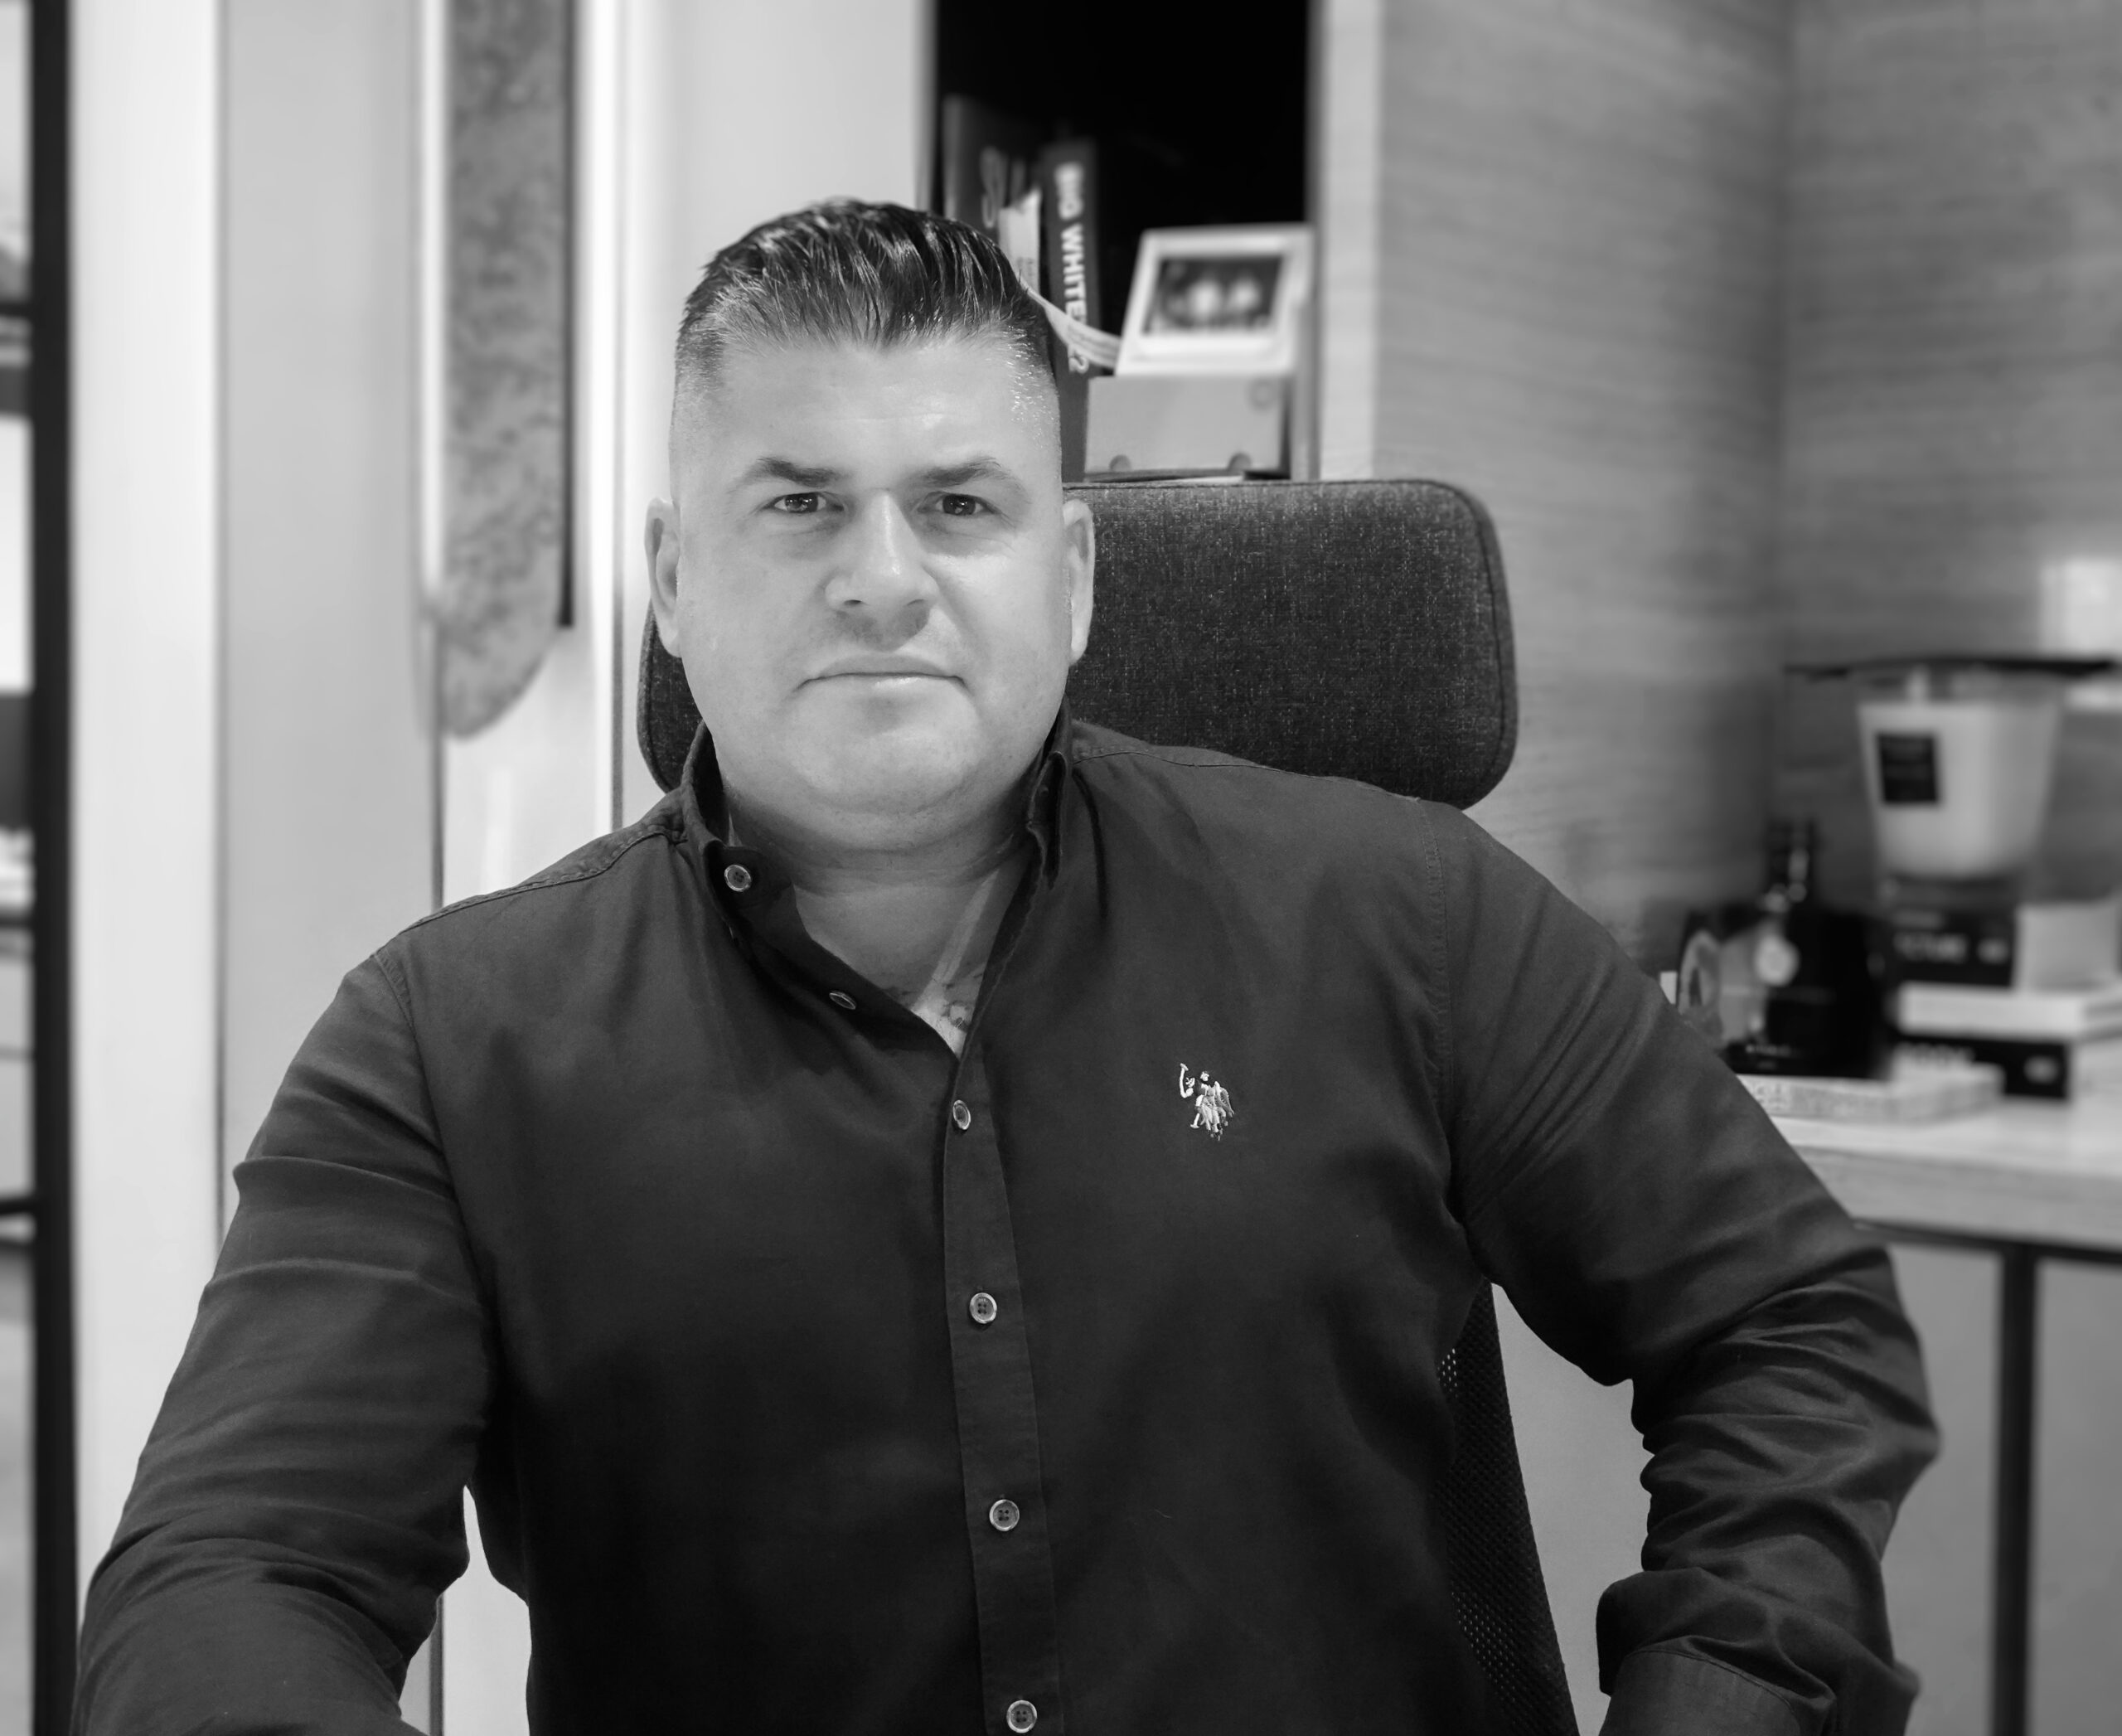 Adam Riccio – Co-founder & CEO of New Evolution